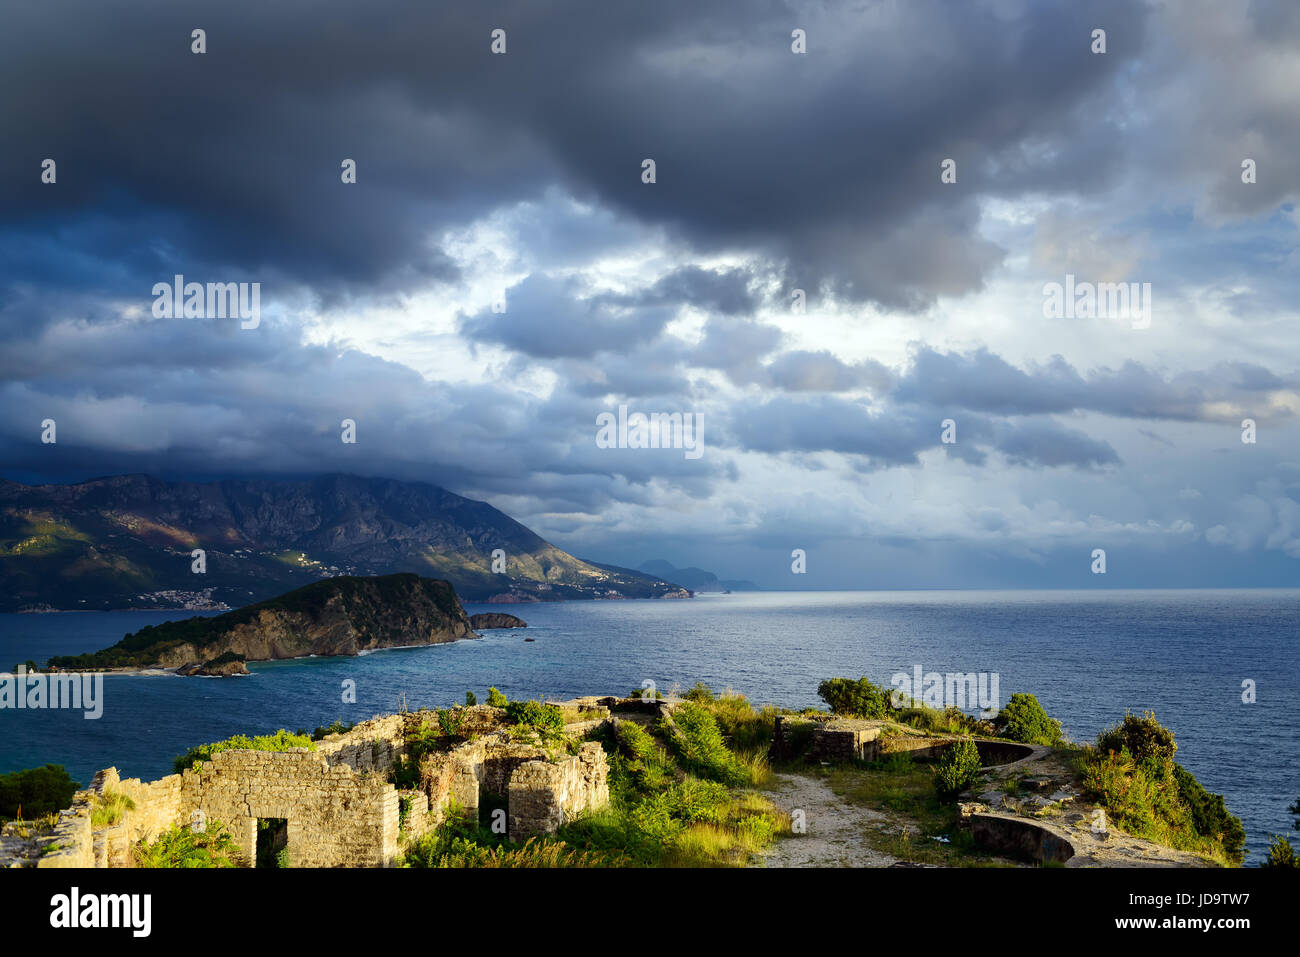 Panorama-Landschaft von Budva Riviera von Morgen Festung Ruinen in Montenegro. Fantastische Aussicht auf den bewölkten Himmel. Dramatische Morgen Szene. Balkan, Ad Stockfoto